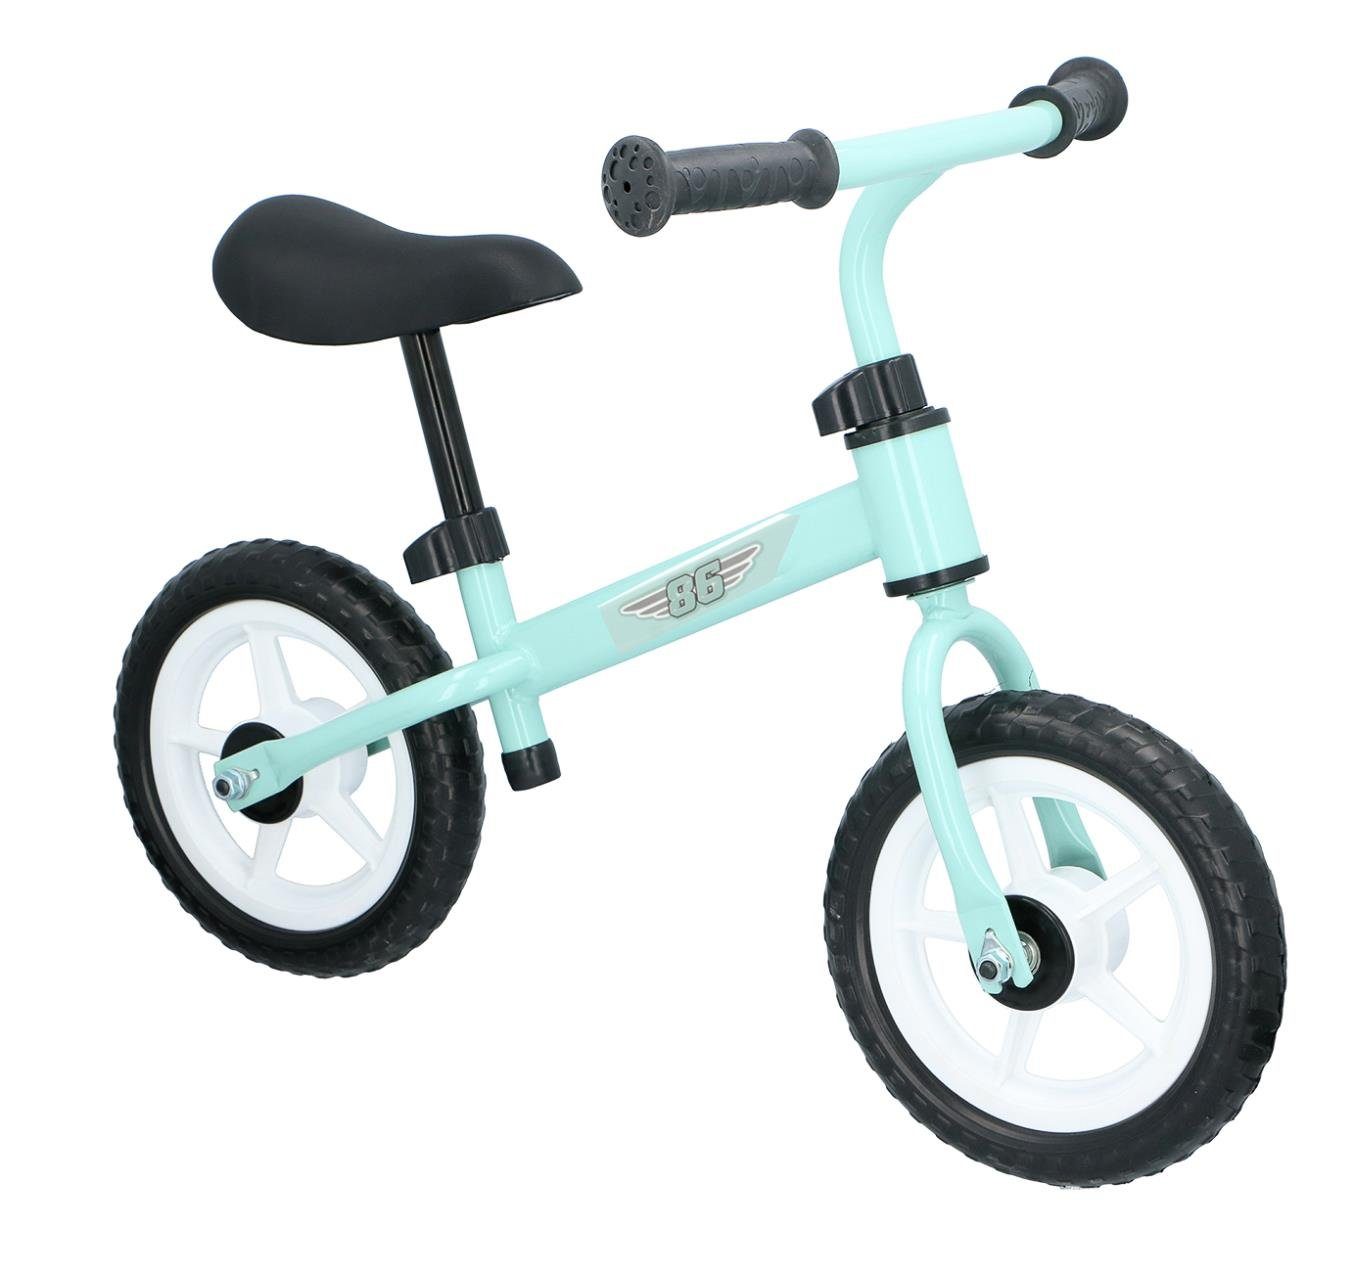 Laufrad für Kinder Metallrahmen Lernlaufrad Lauflernrad Kinderrad 2-6 Jahre mete 